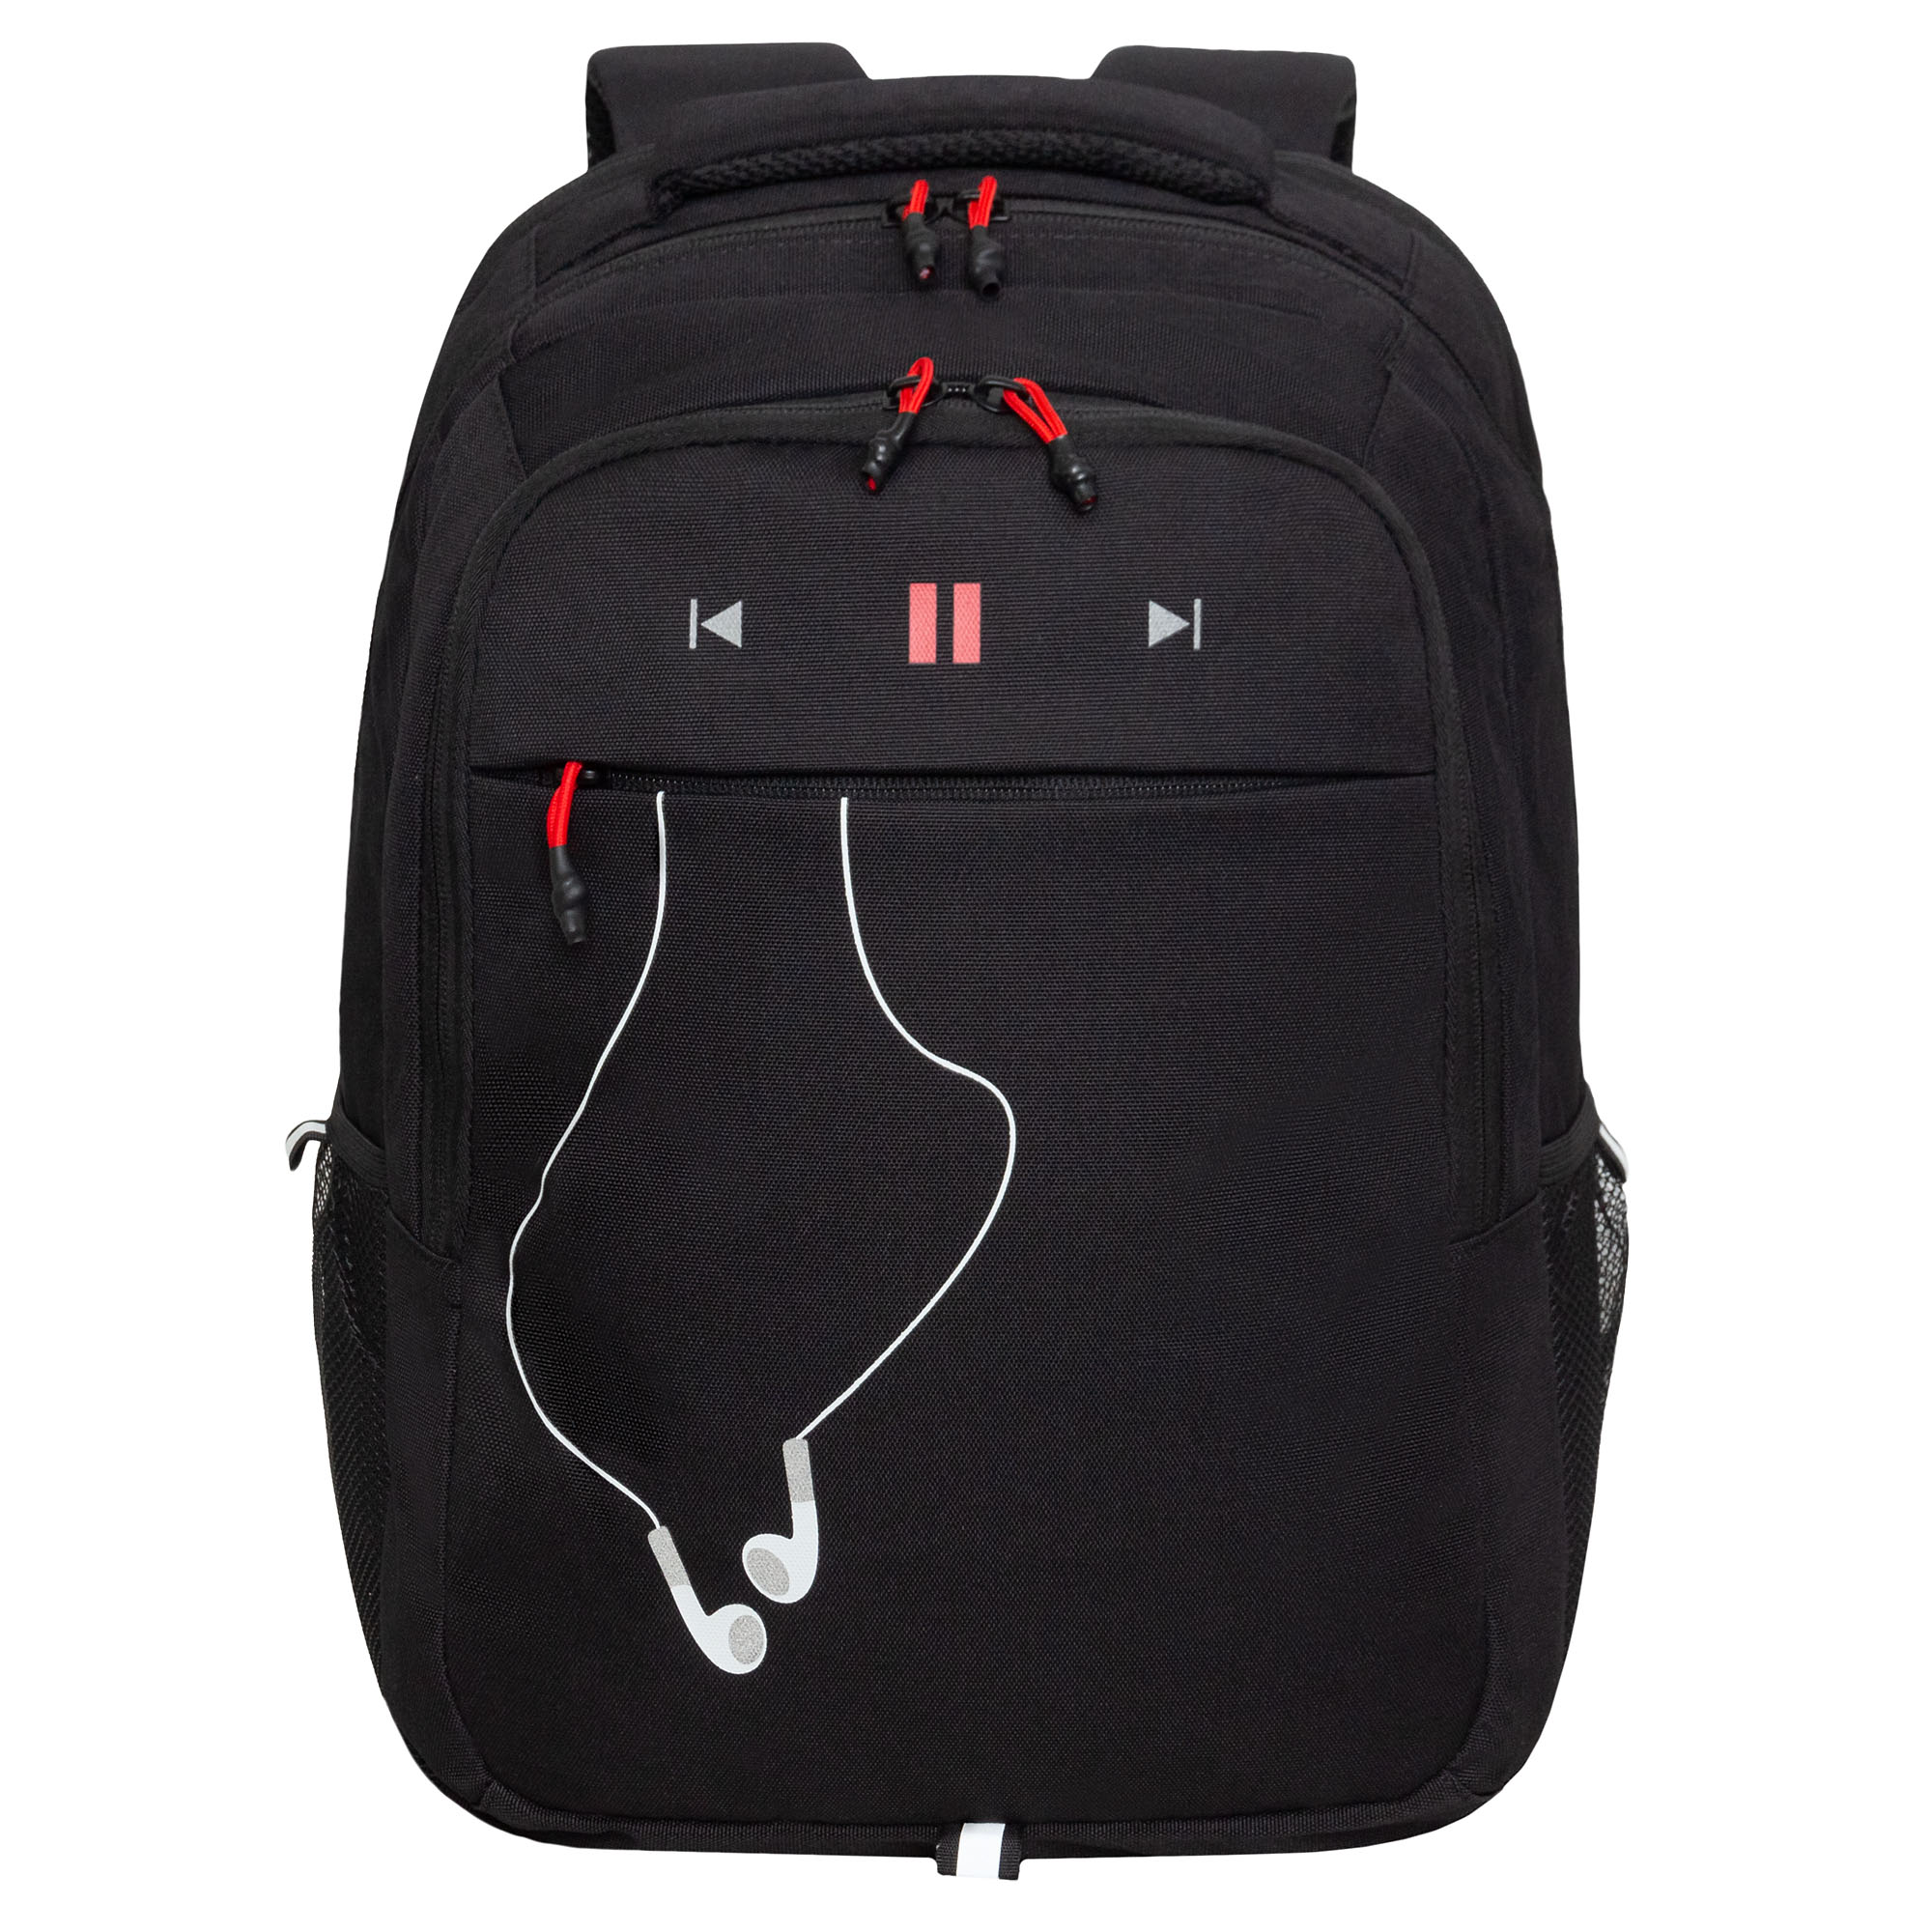 Рюкзак молодежный Grizzly с карманом для ноутбука 15, RU-432-4/2, черный, красный рюкзак для ноутбука 13 3 sumdex pon 266gy